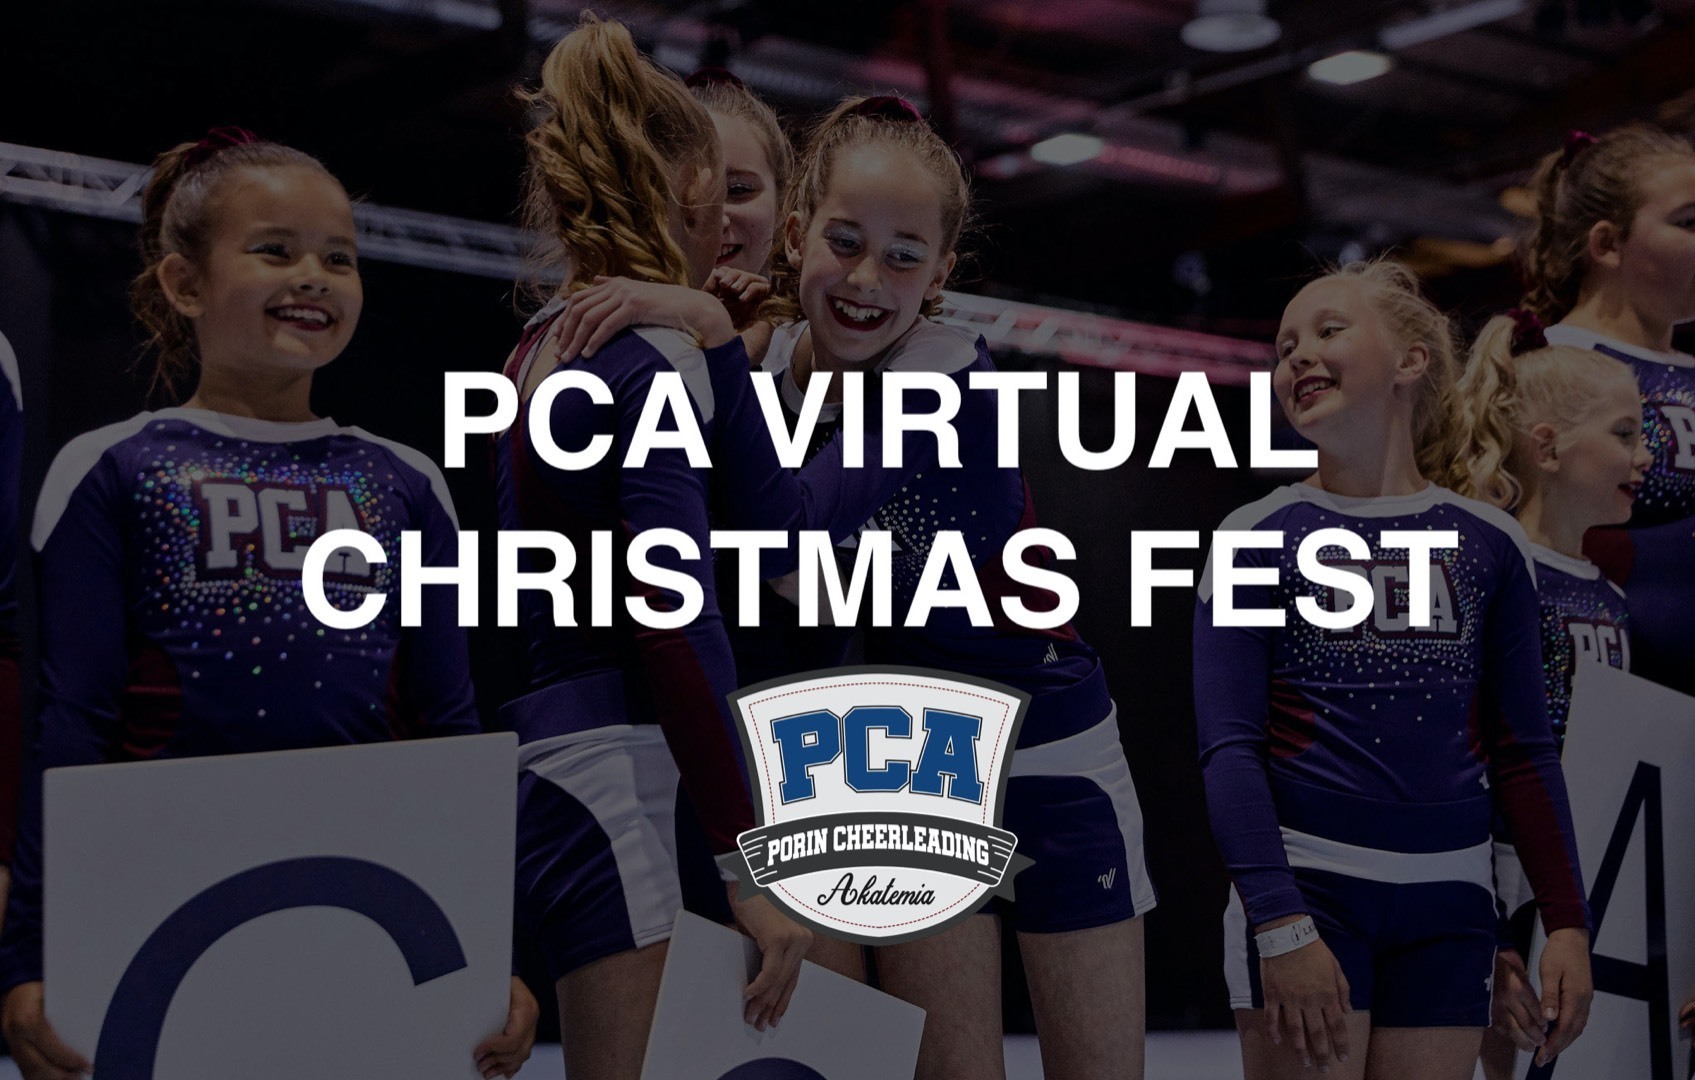 PCA VIRTUAL CHRISTMAS FEST